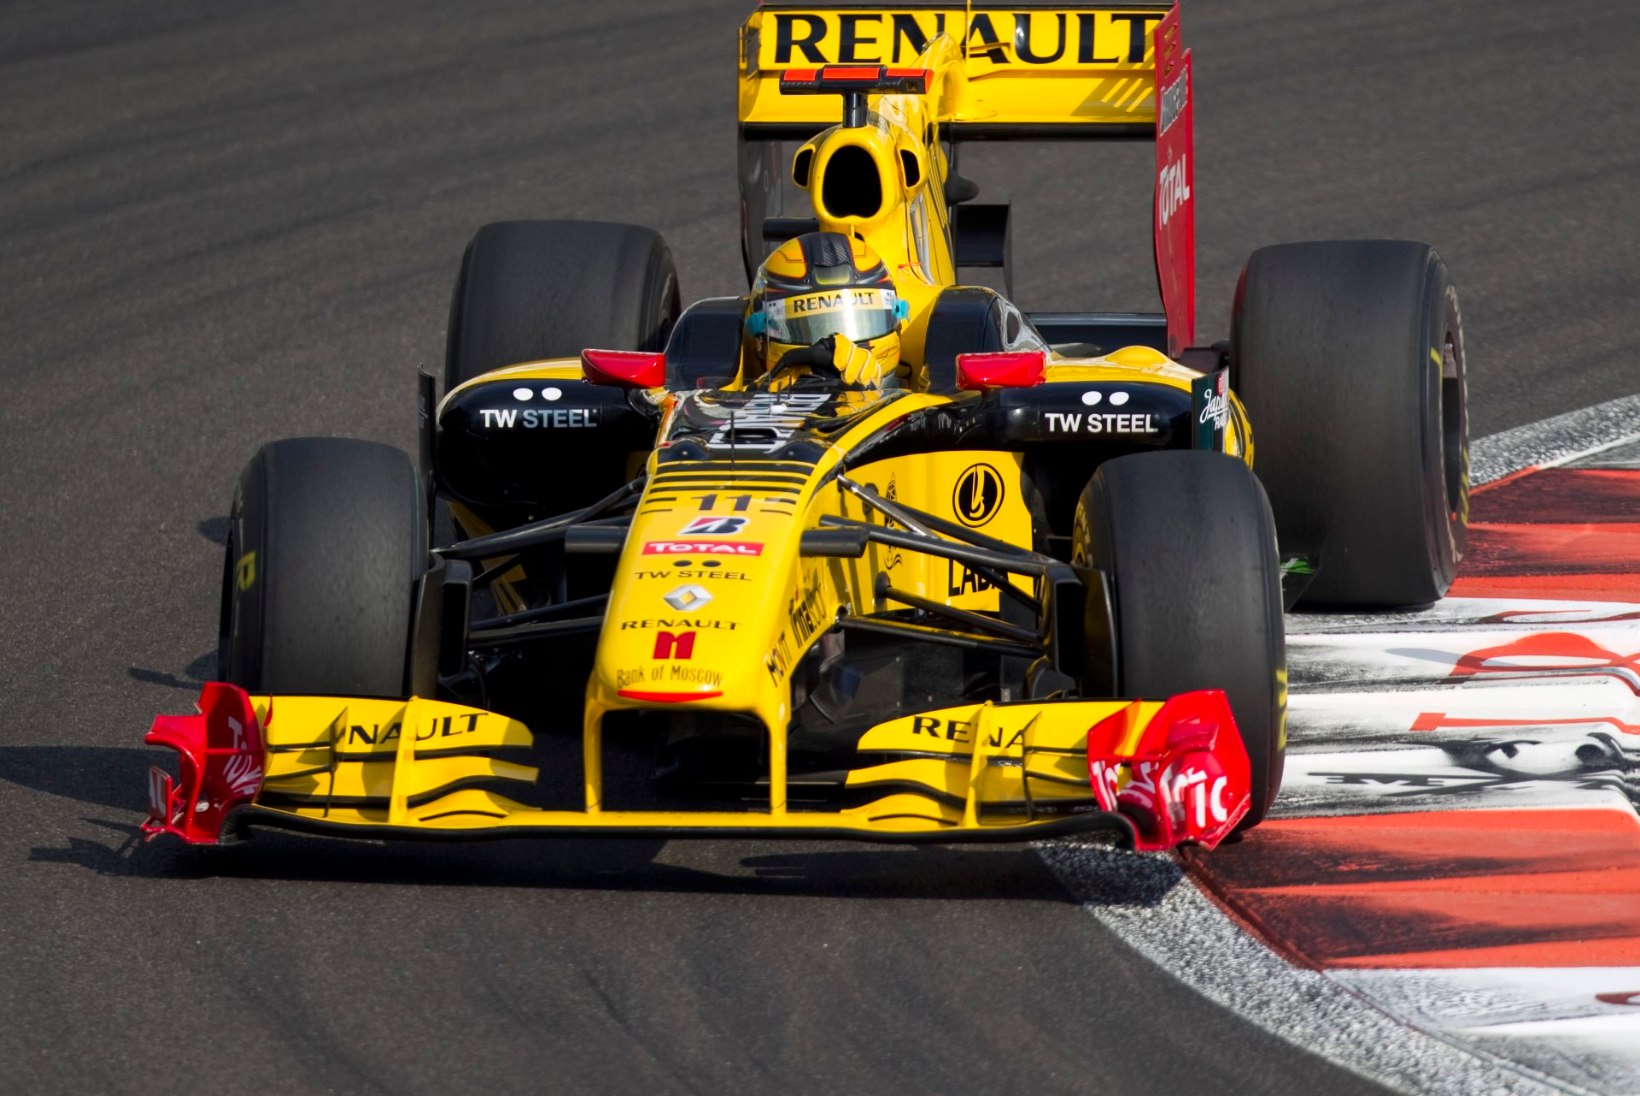 NII SEE JUHTUS | Sport 03.12: Renault ostis Lotuse vormelimeeskonna